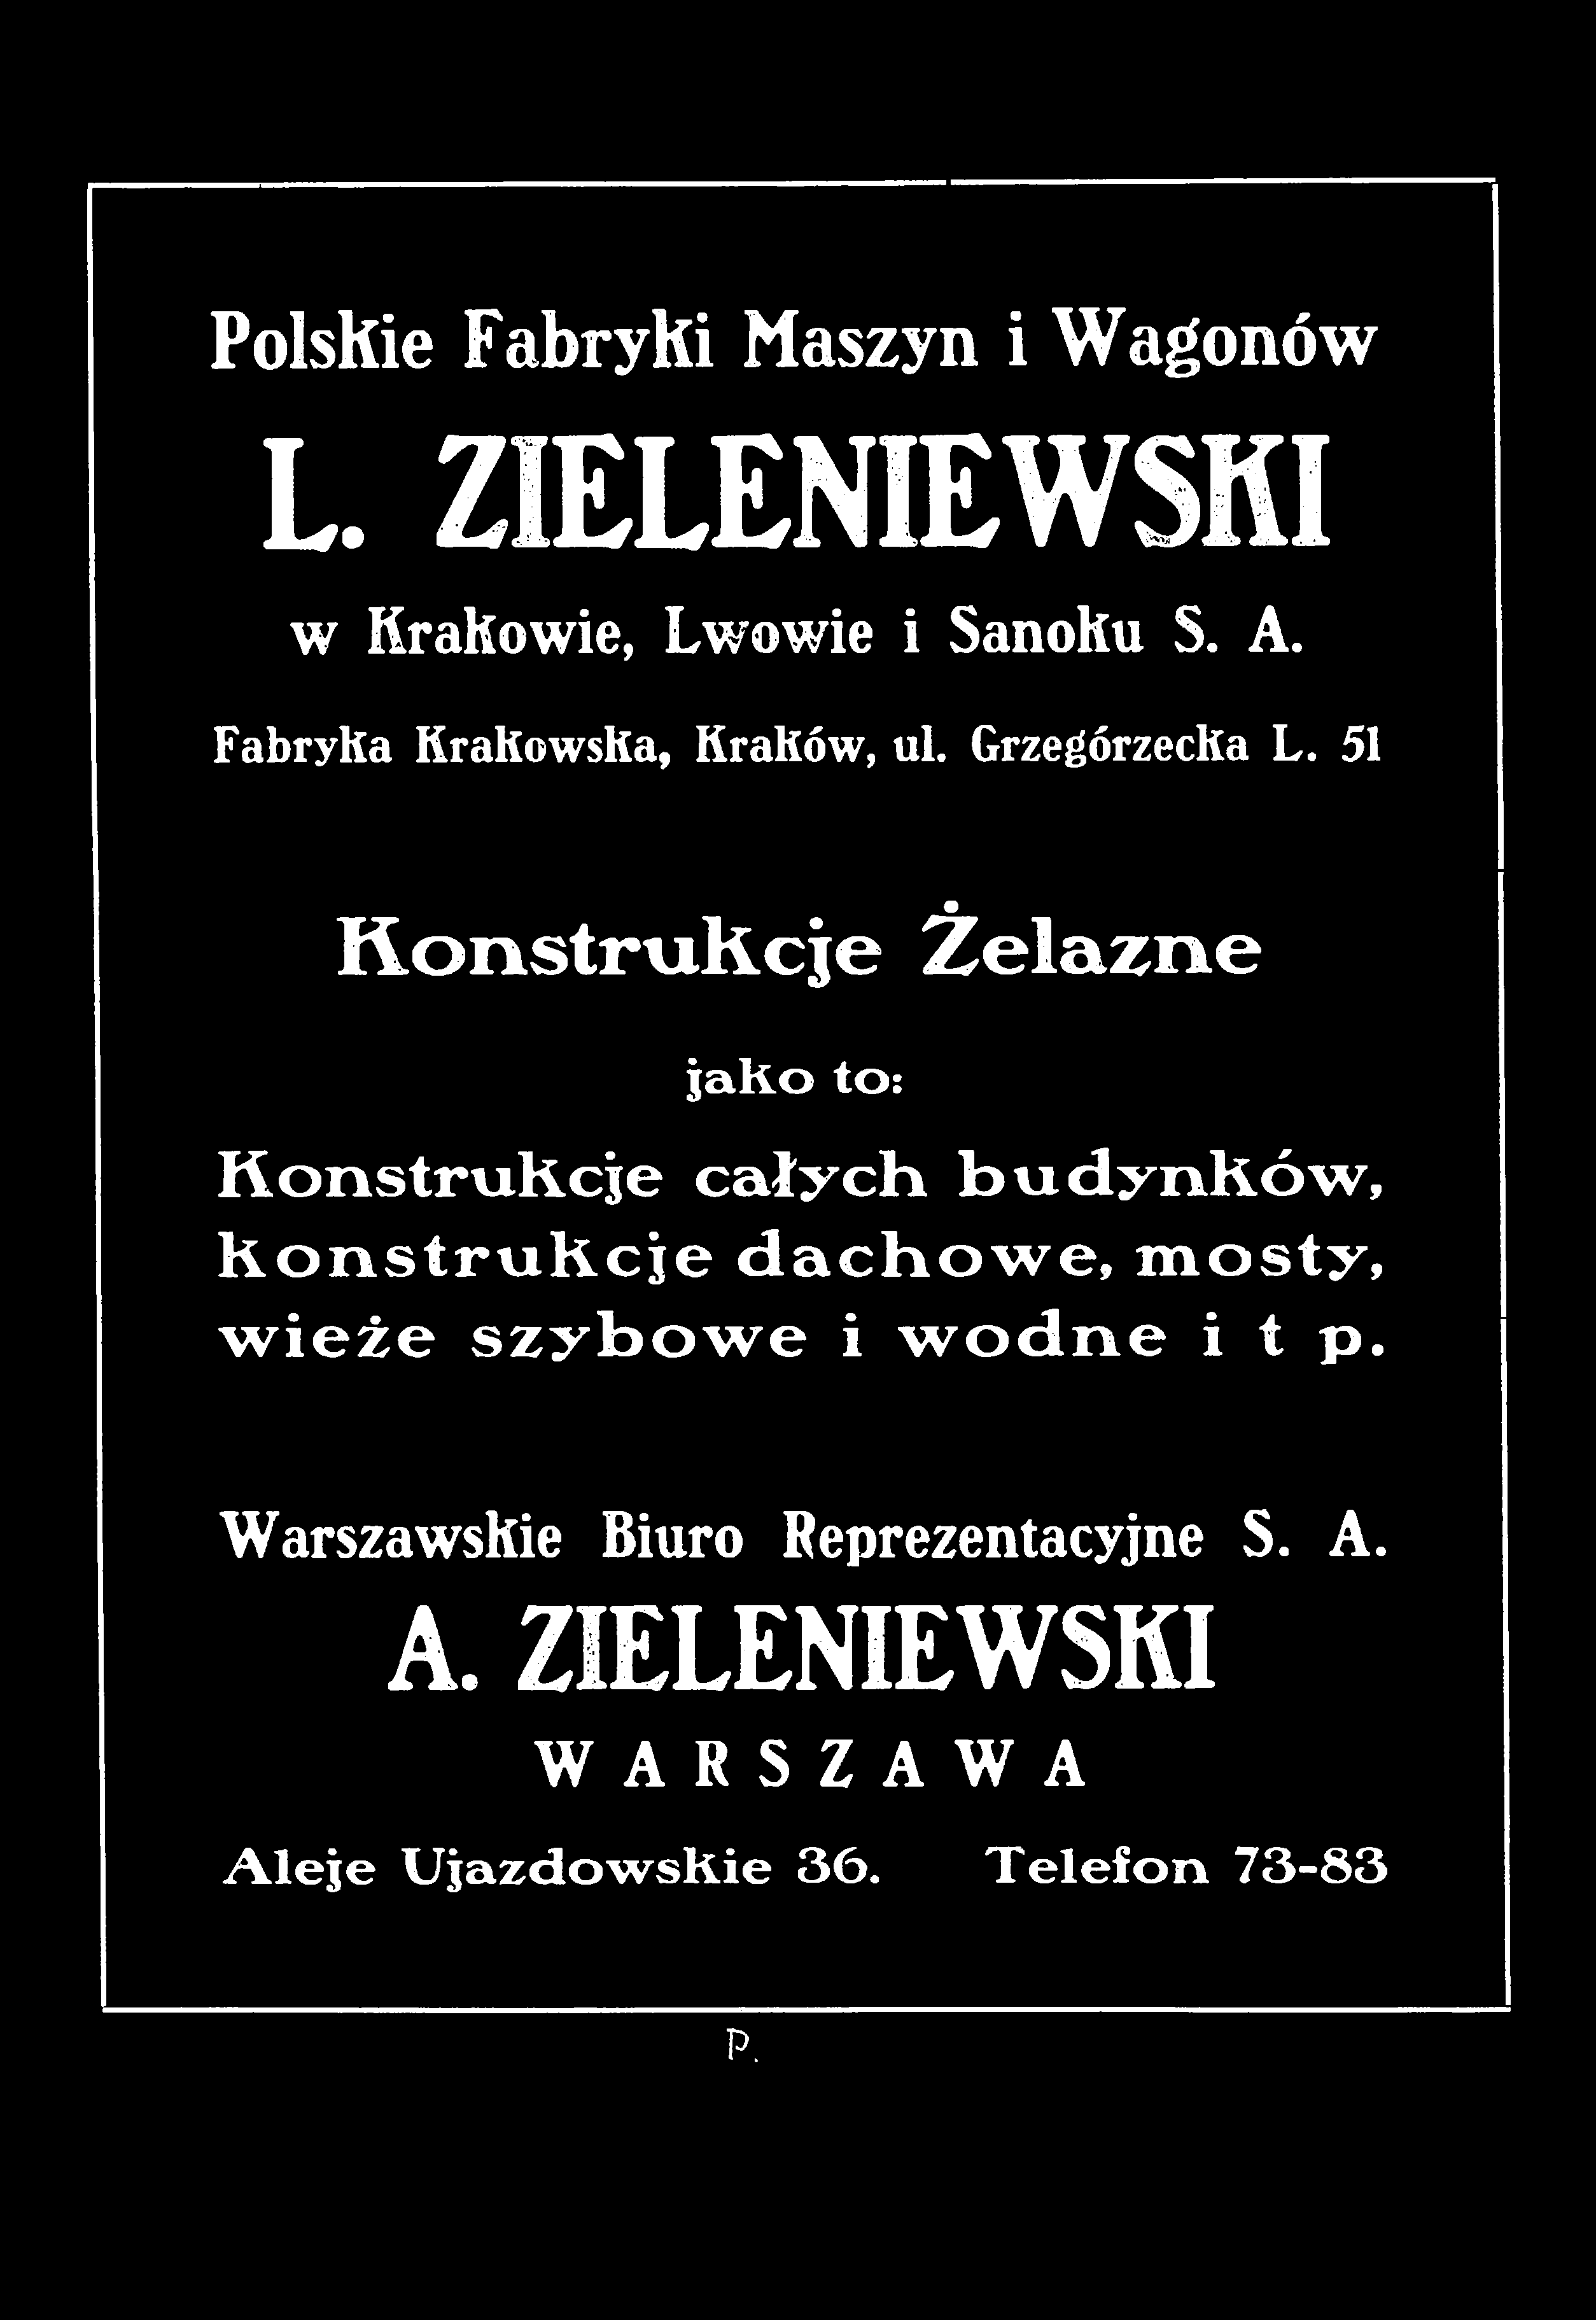 PoIsKie Fabryki Maszyn i Wagonów L. ZIELENIEWSKI w Krakowie, Lwowie i SanoKu S. A. Fabryka Krakowska, Kraków, ul. Grzegórzecka L.